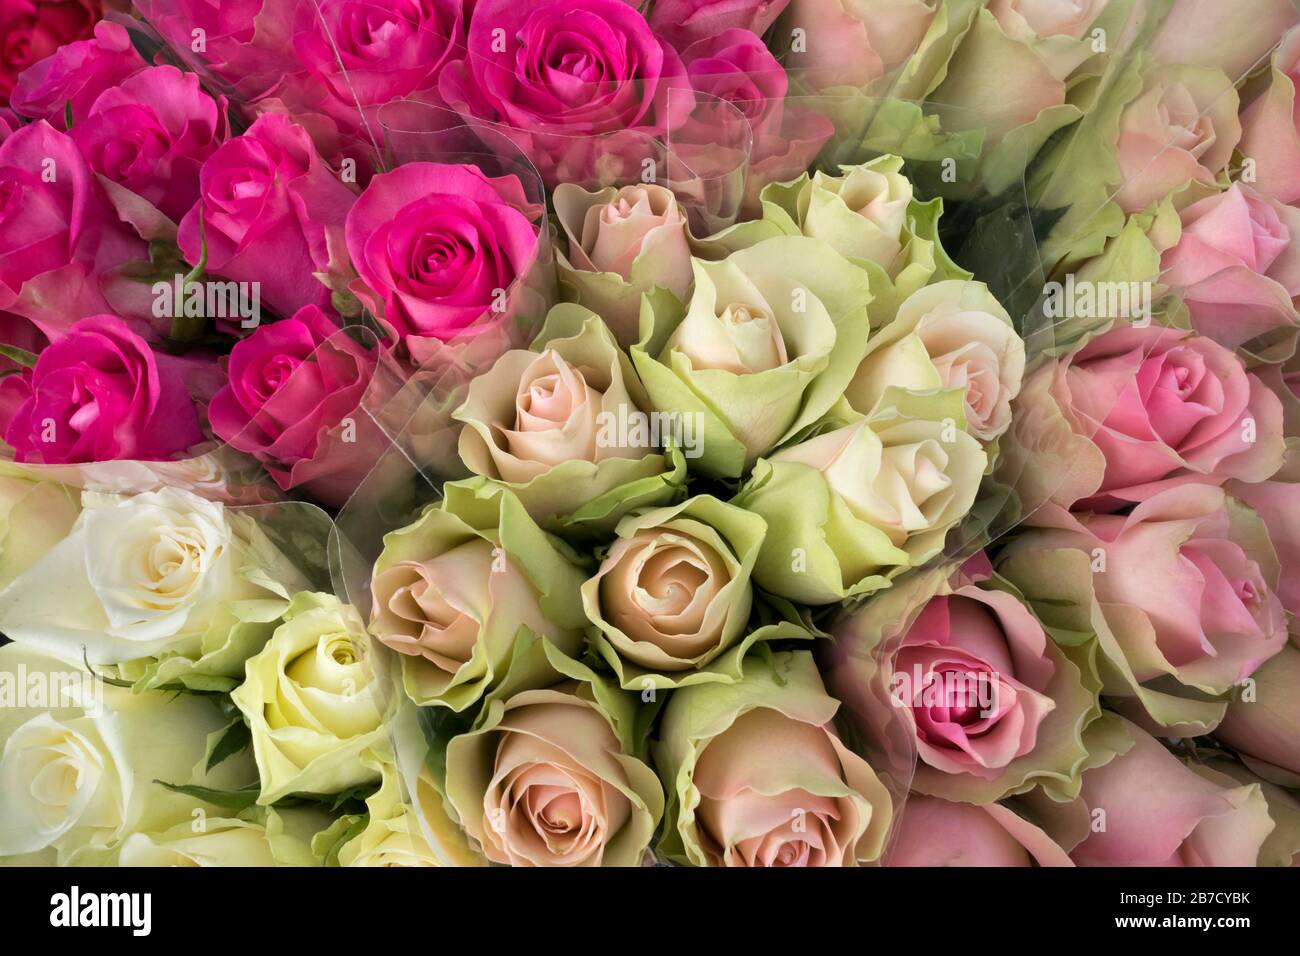 Grappoli di rose bianche e rosa chiudono la cornice Foto Stock